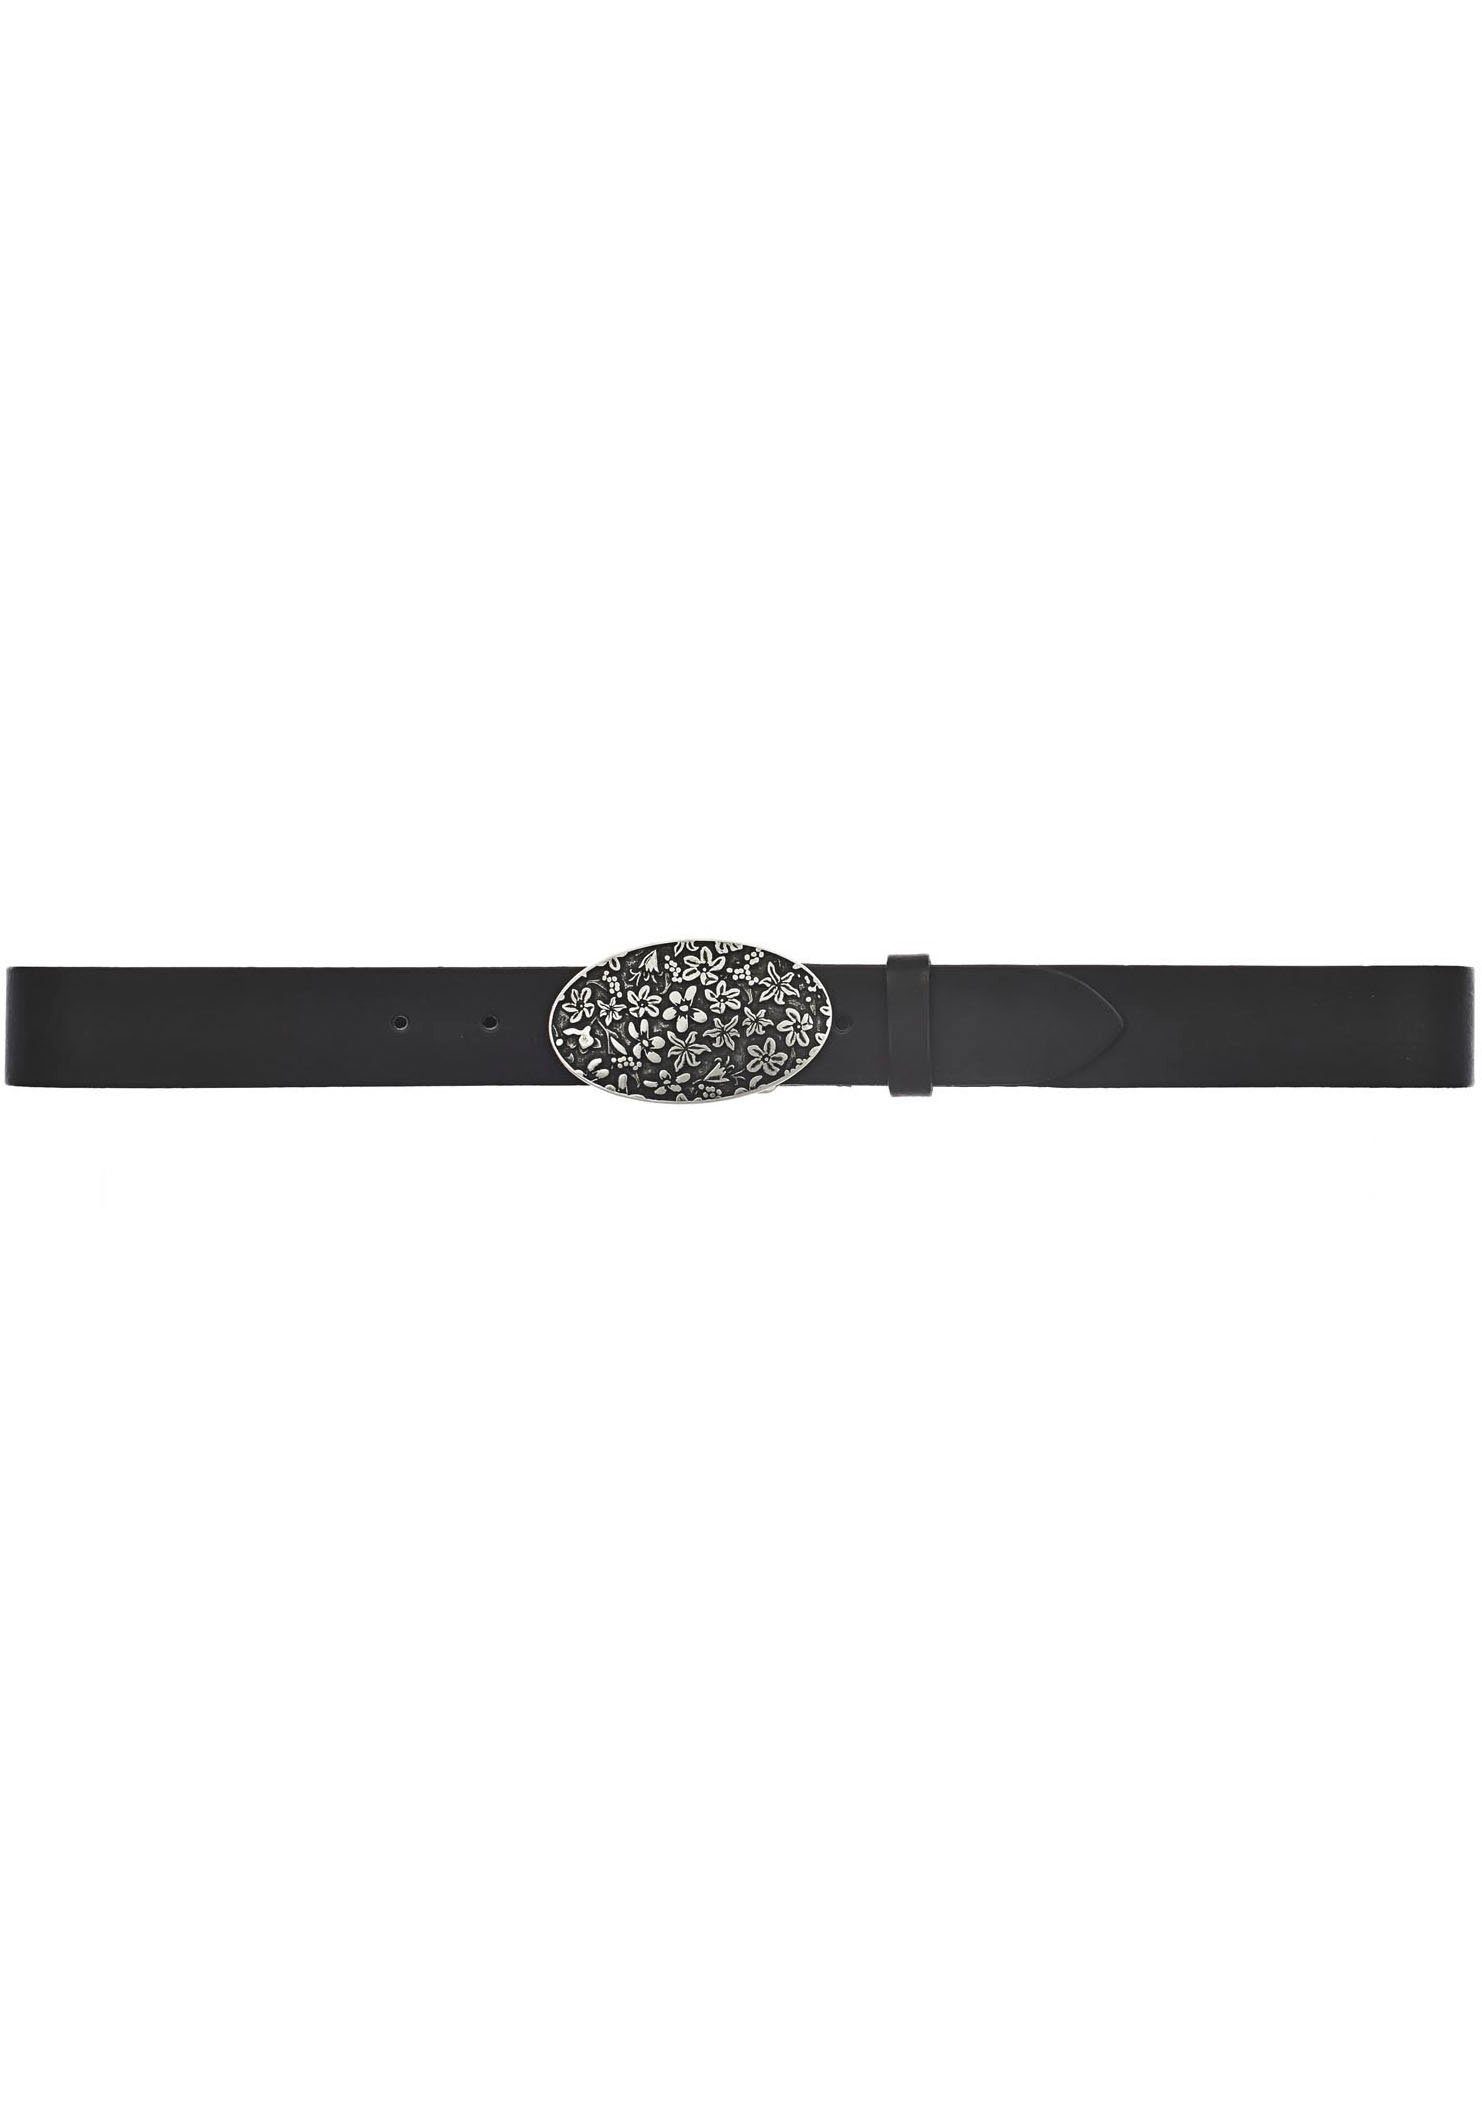 MUSTANG Koppelgürtel mit Silberfarbton Schließe in poliertem verzierter schwarz 790